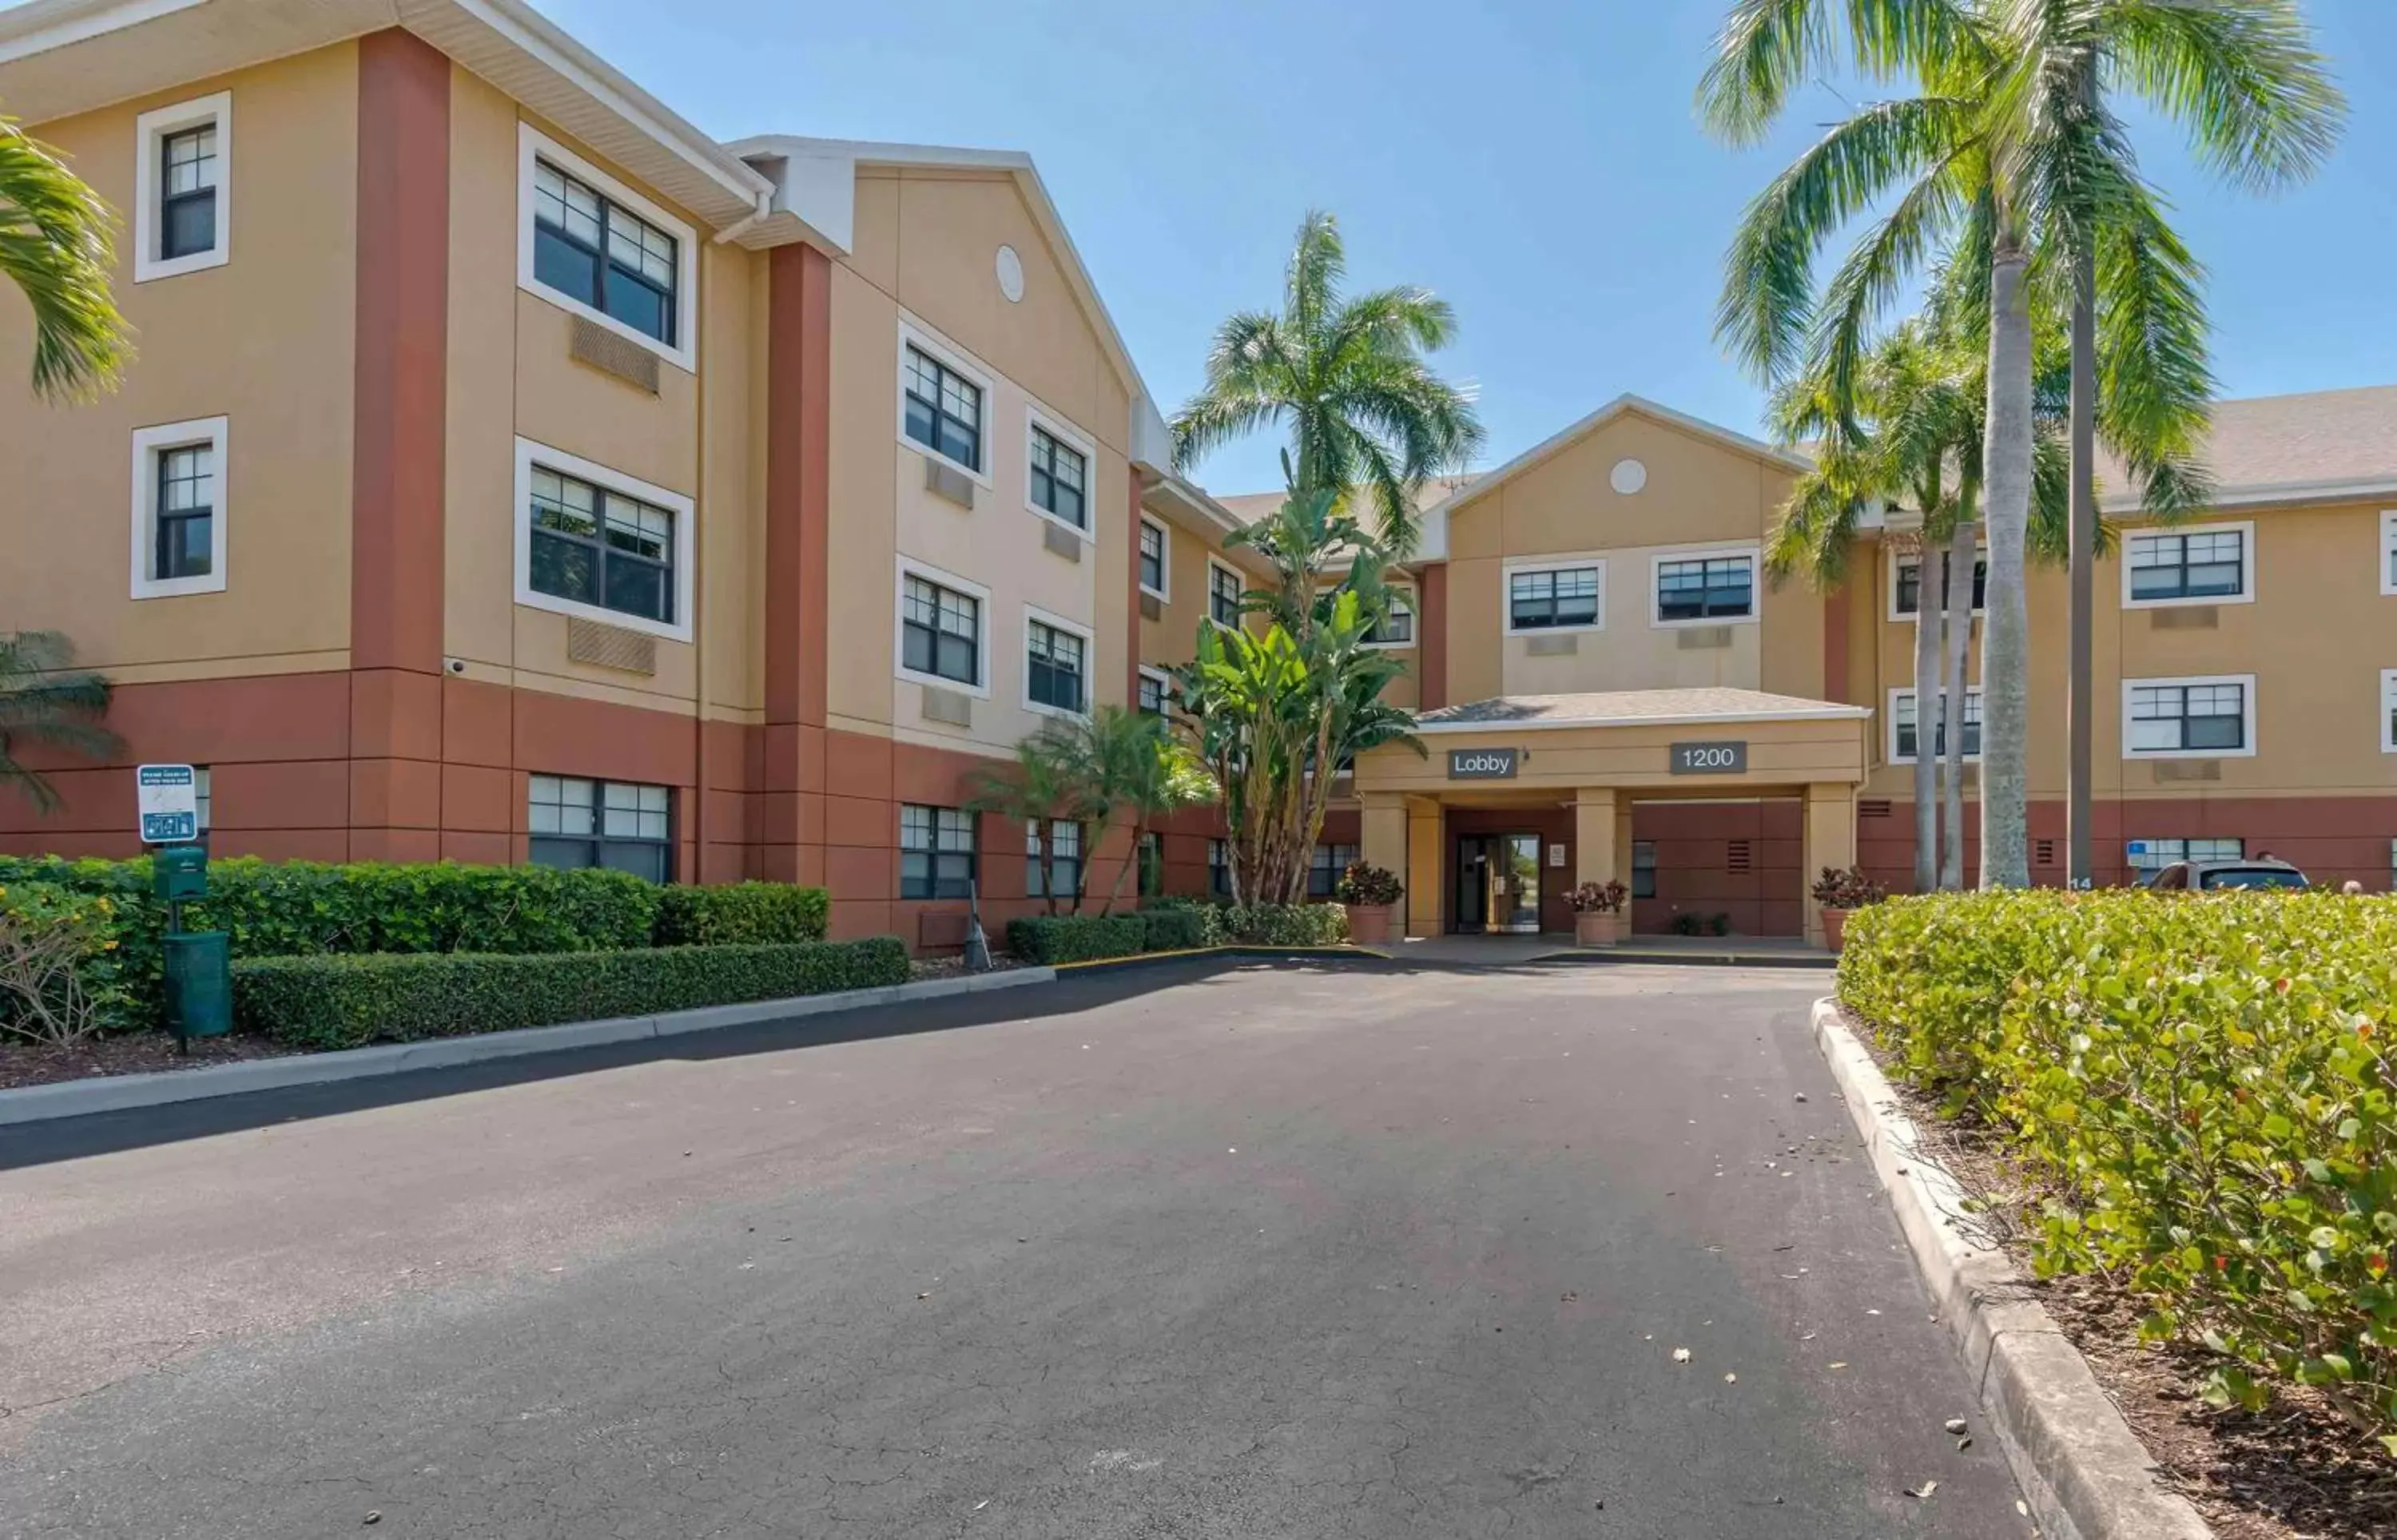 Property Building in Extended Stay America Premier Suites - Fort Lauderdale - Deerfield Beach